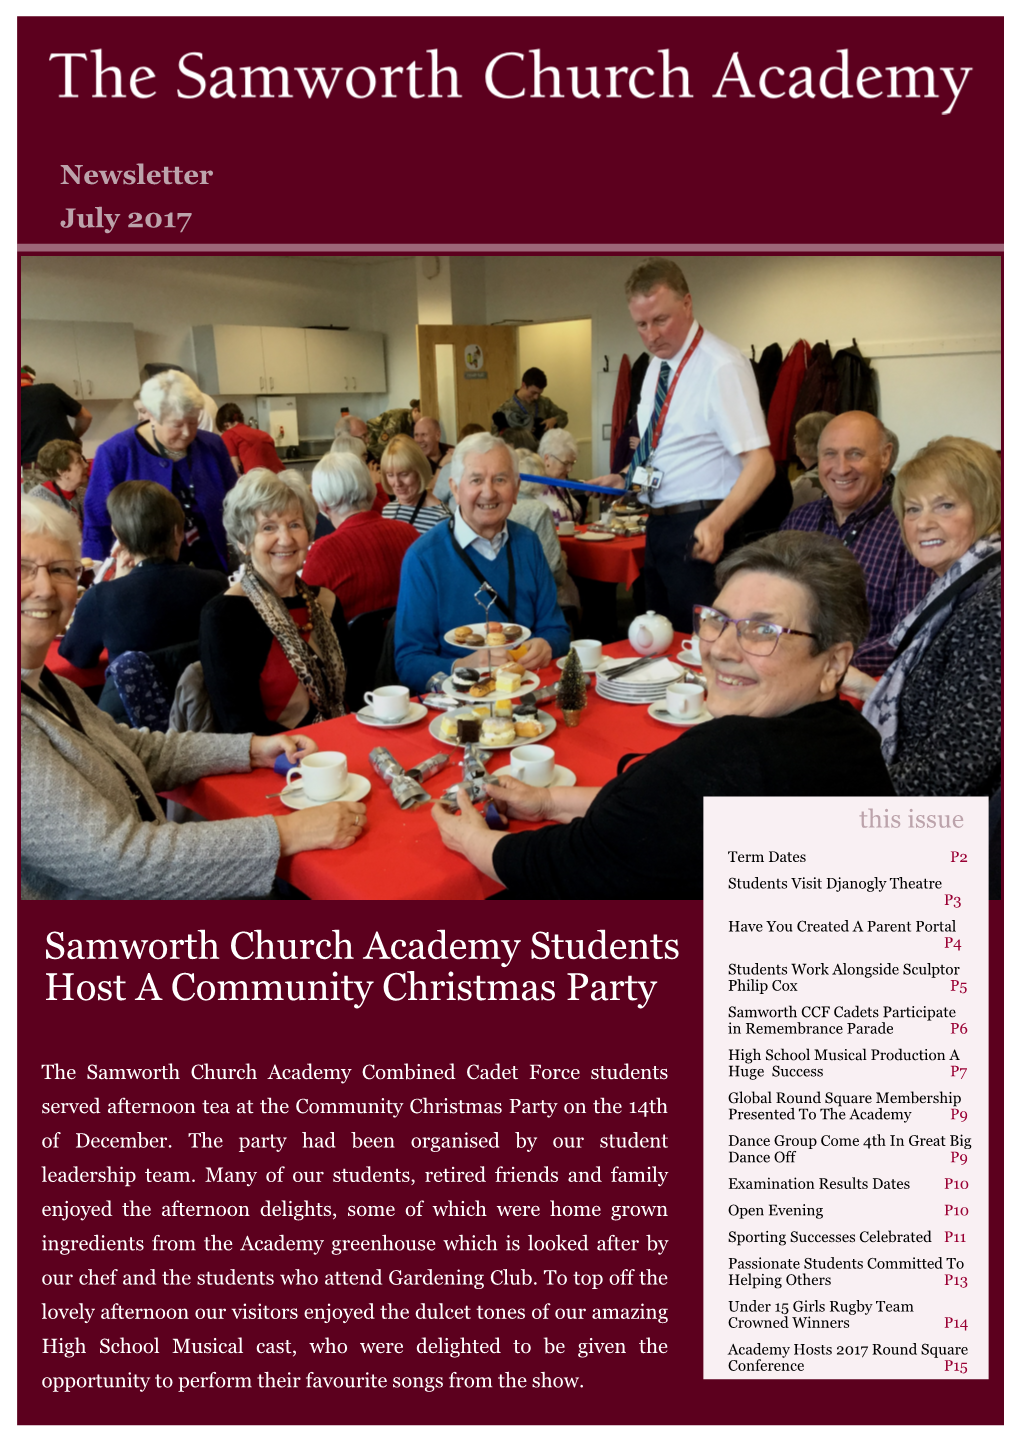 Samworth Church Academy Students Host a Community Christmas Party